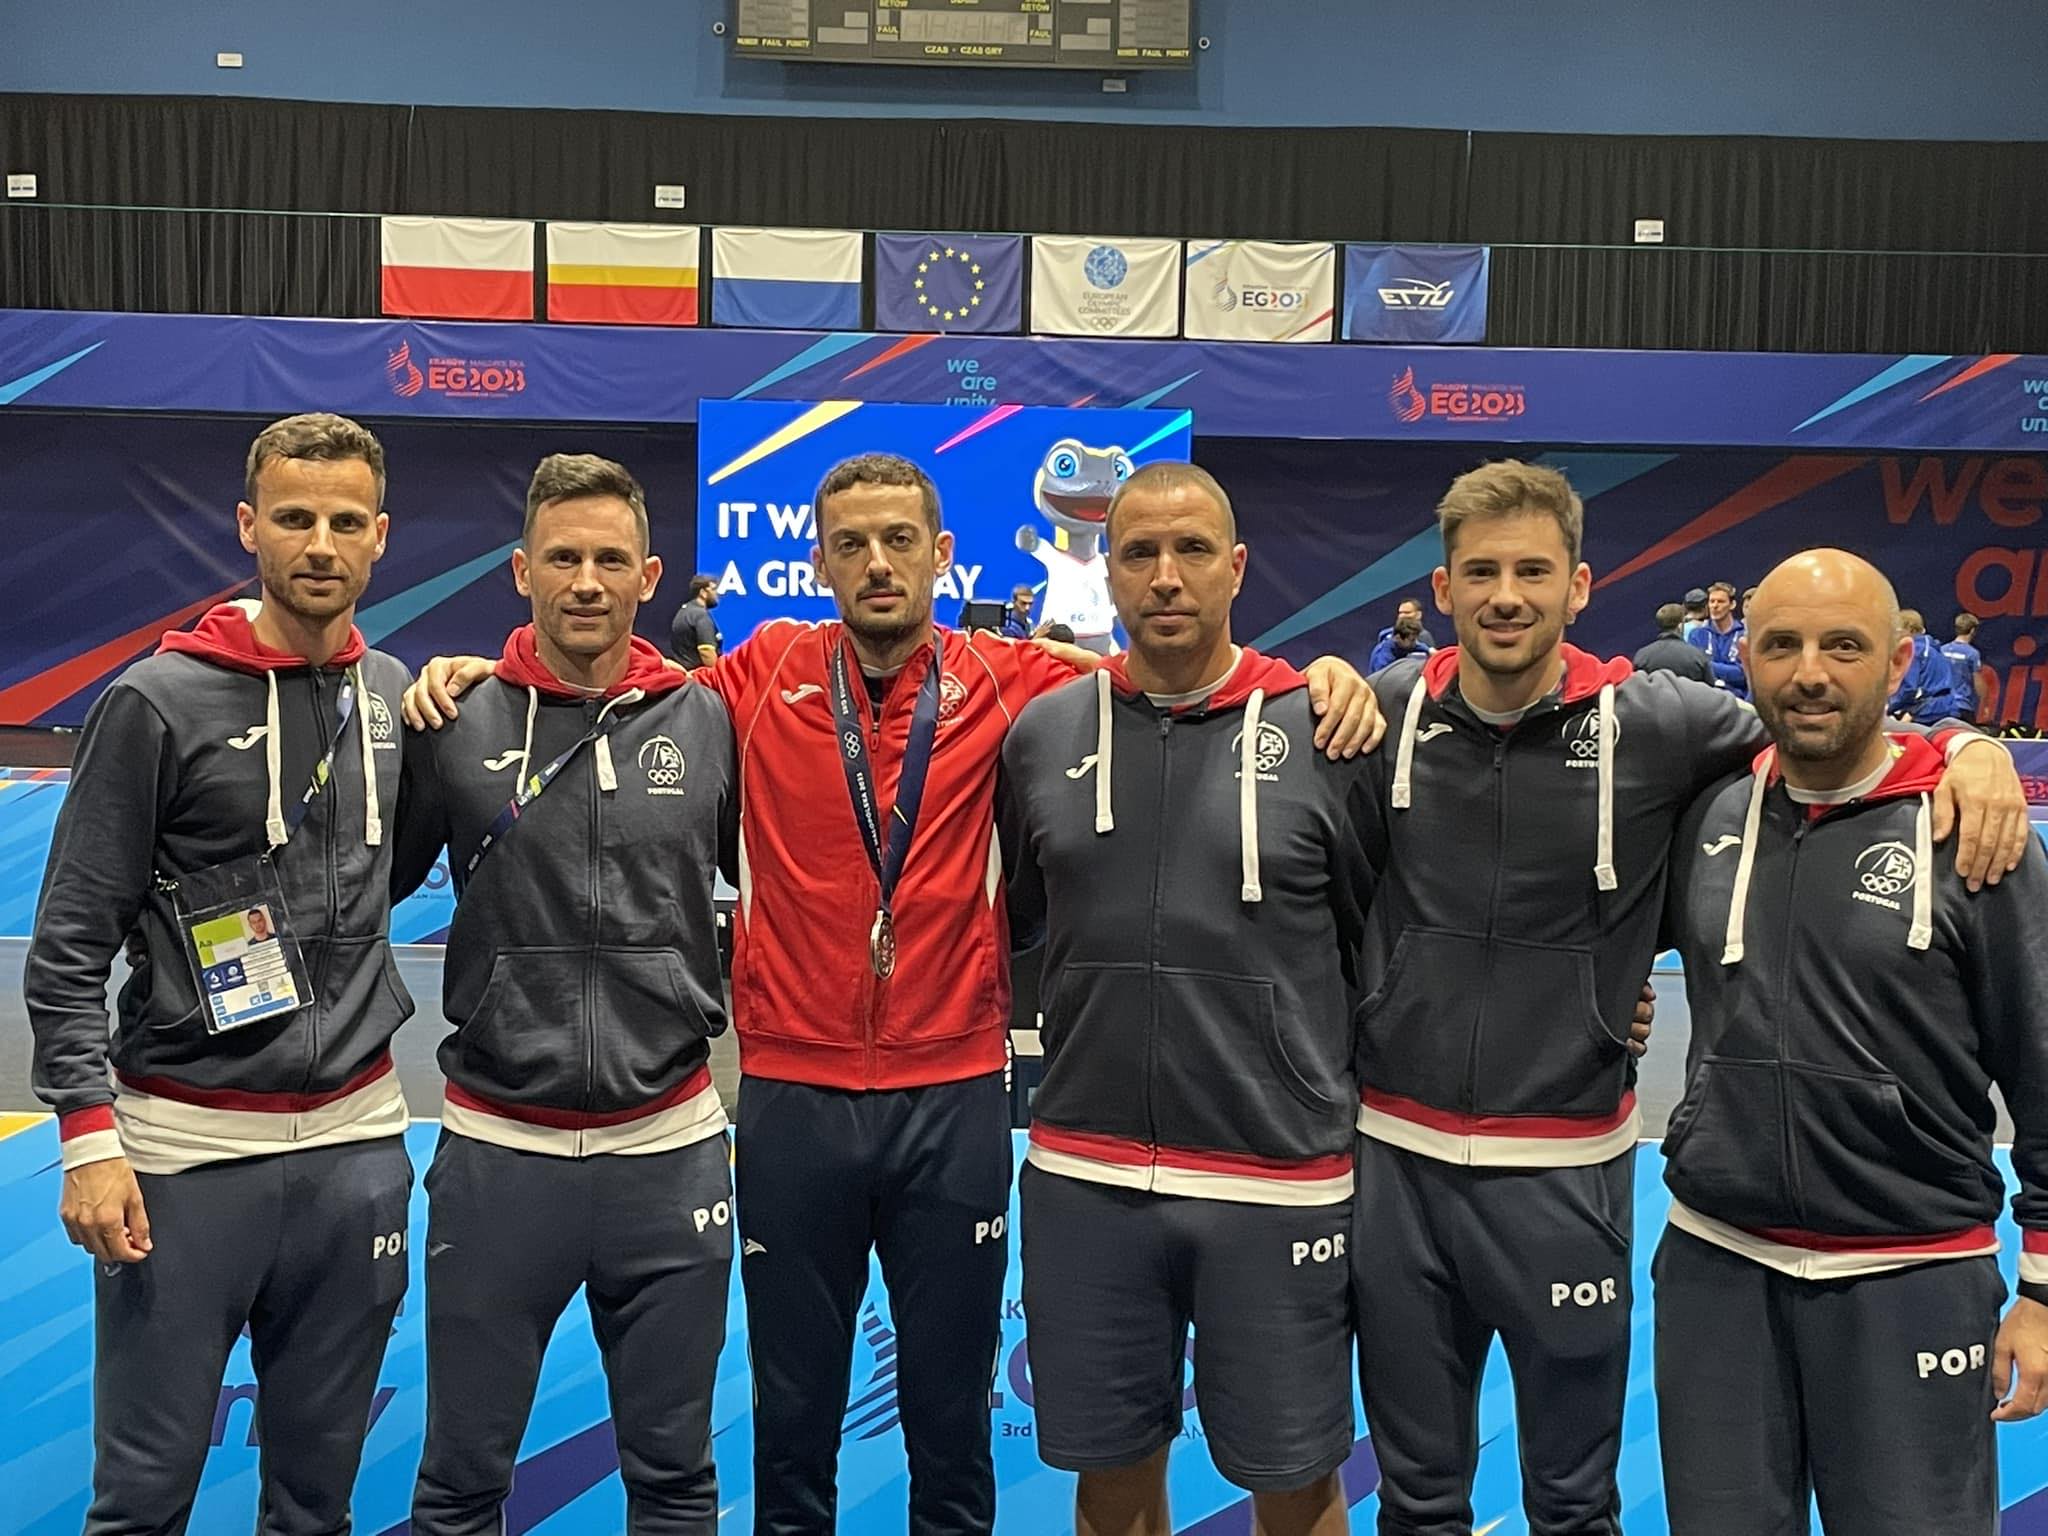 Seleção masculina qualificada para as meias-finais dos Jogos Europeus